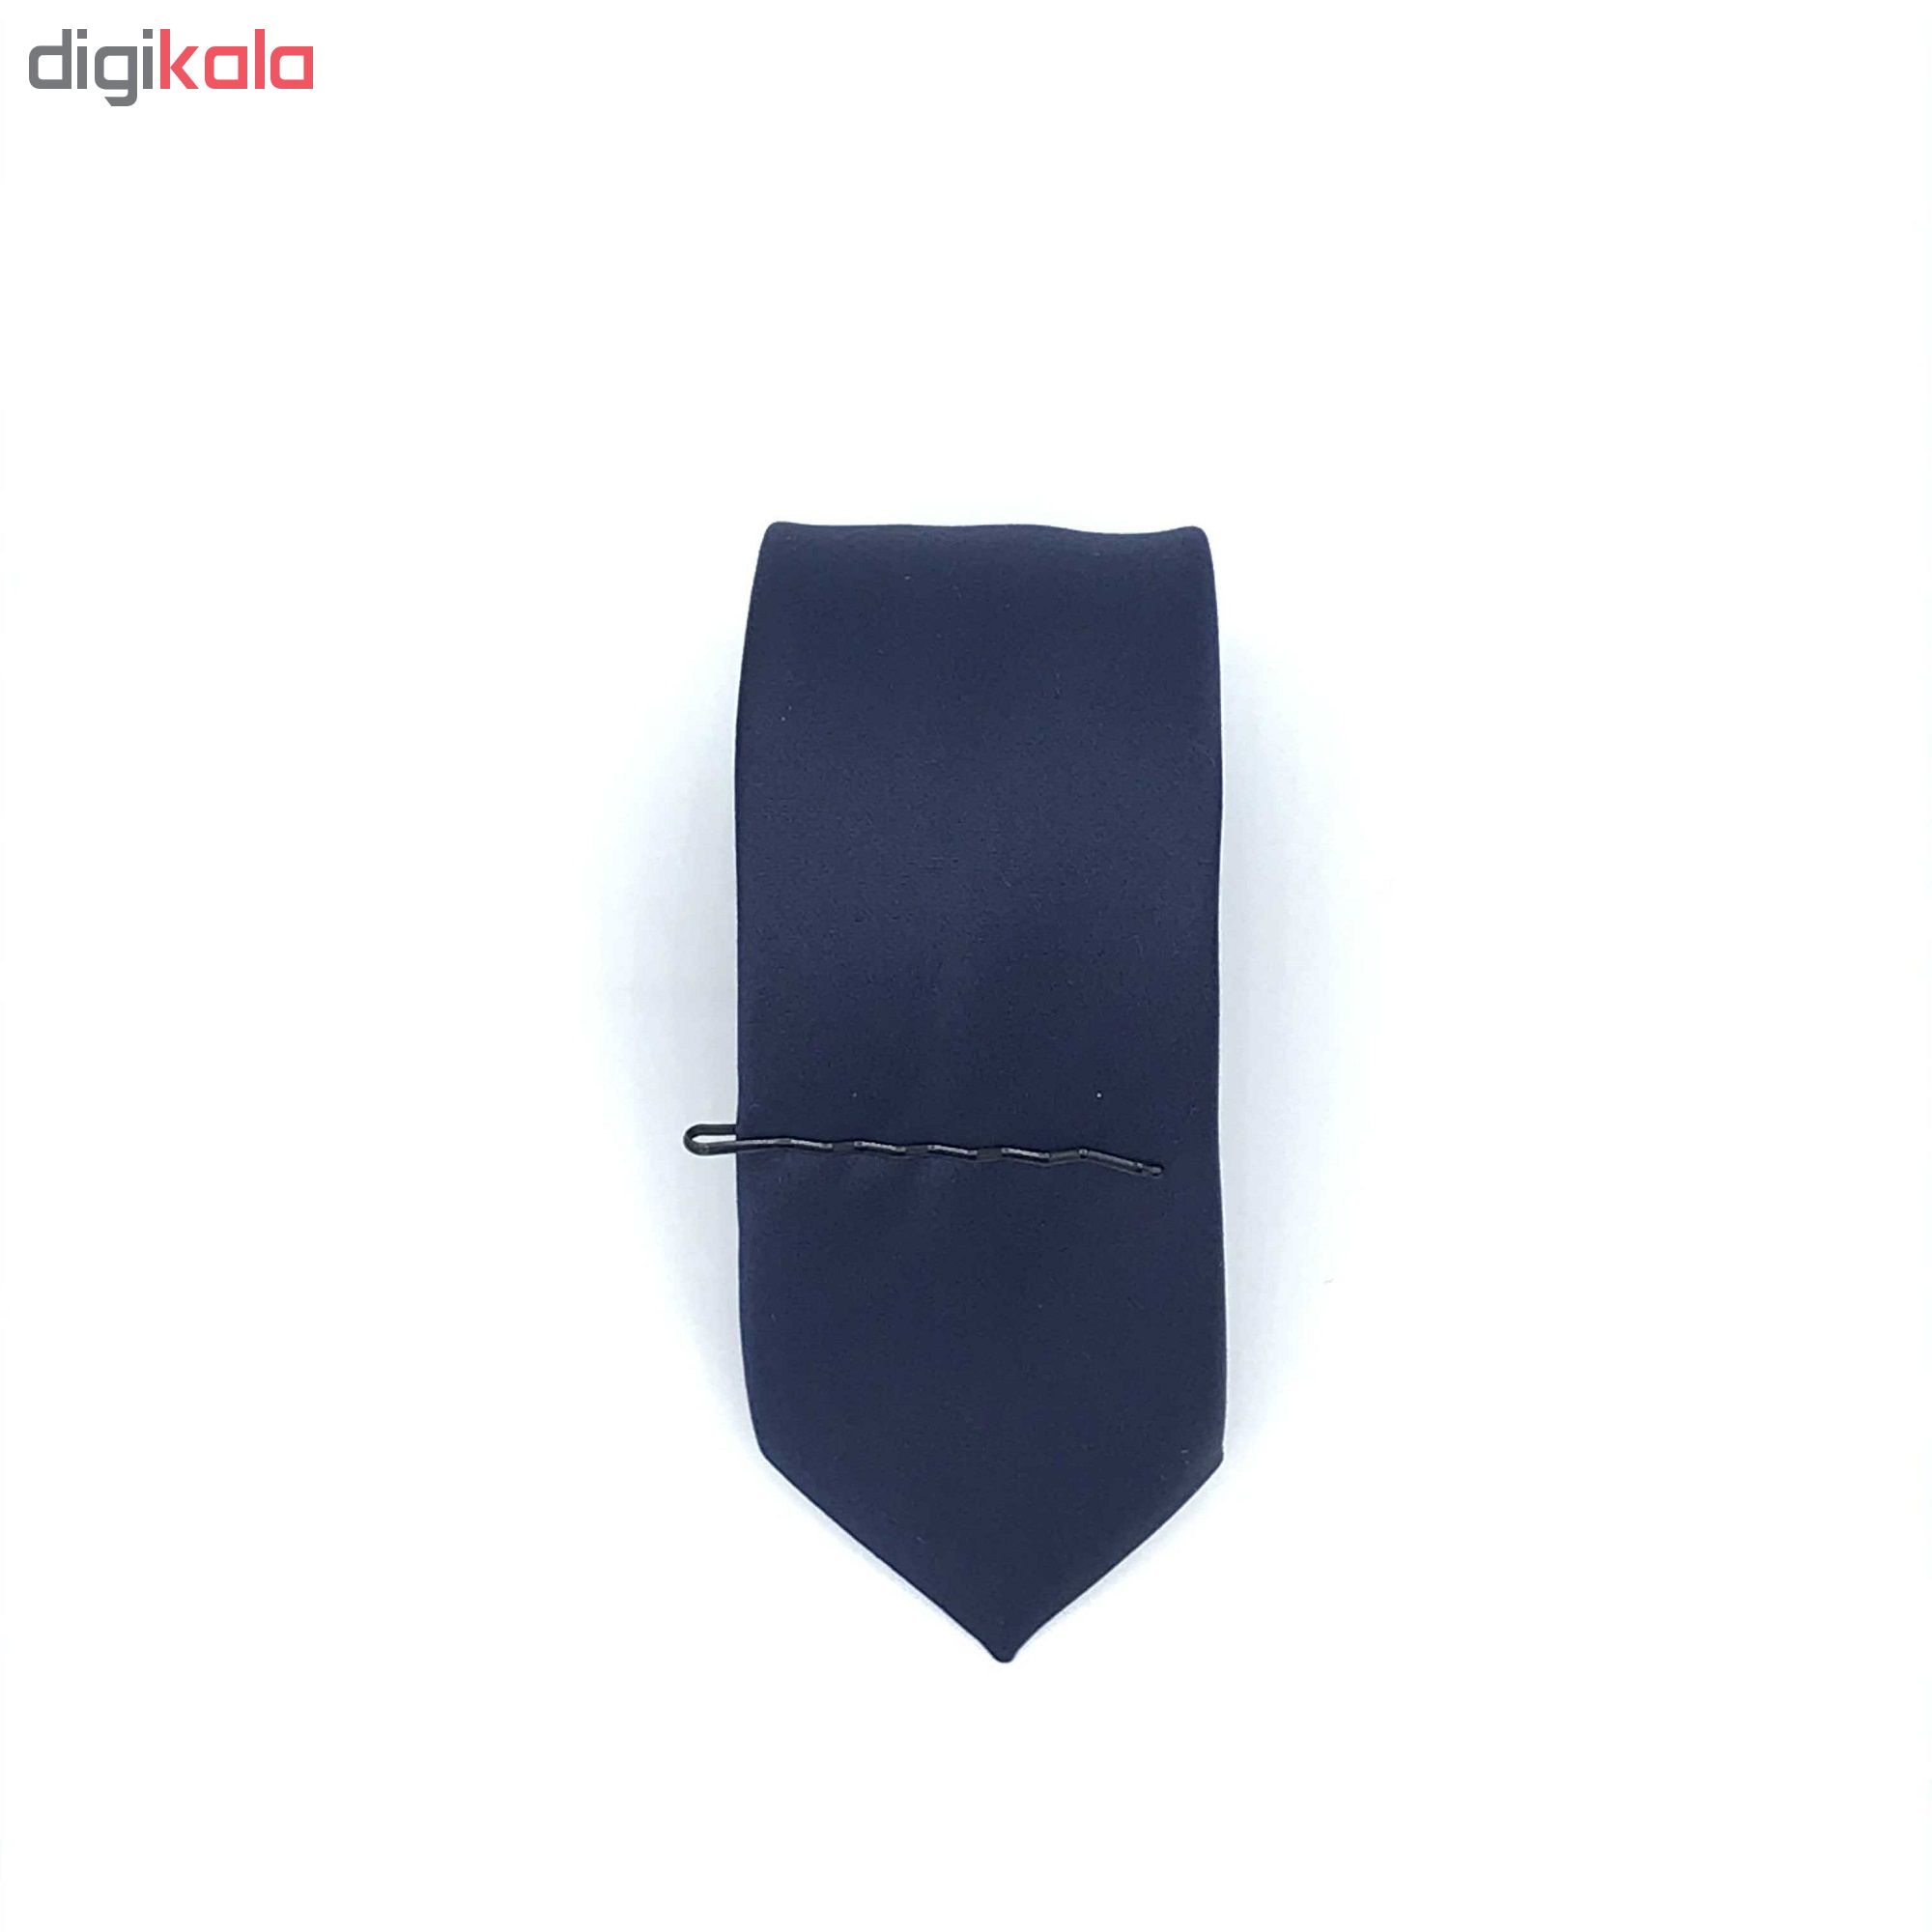 ست کراوات پاپیون دستمال جیب و گل کت مدل KPDG-1002